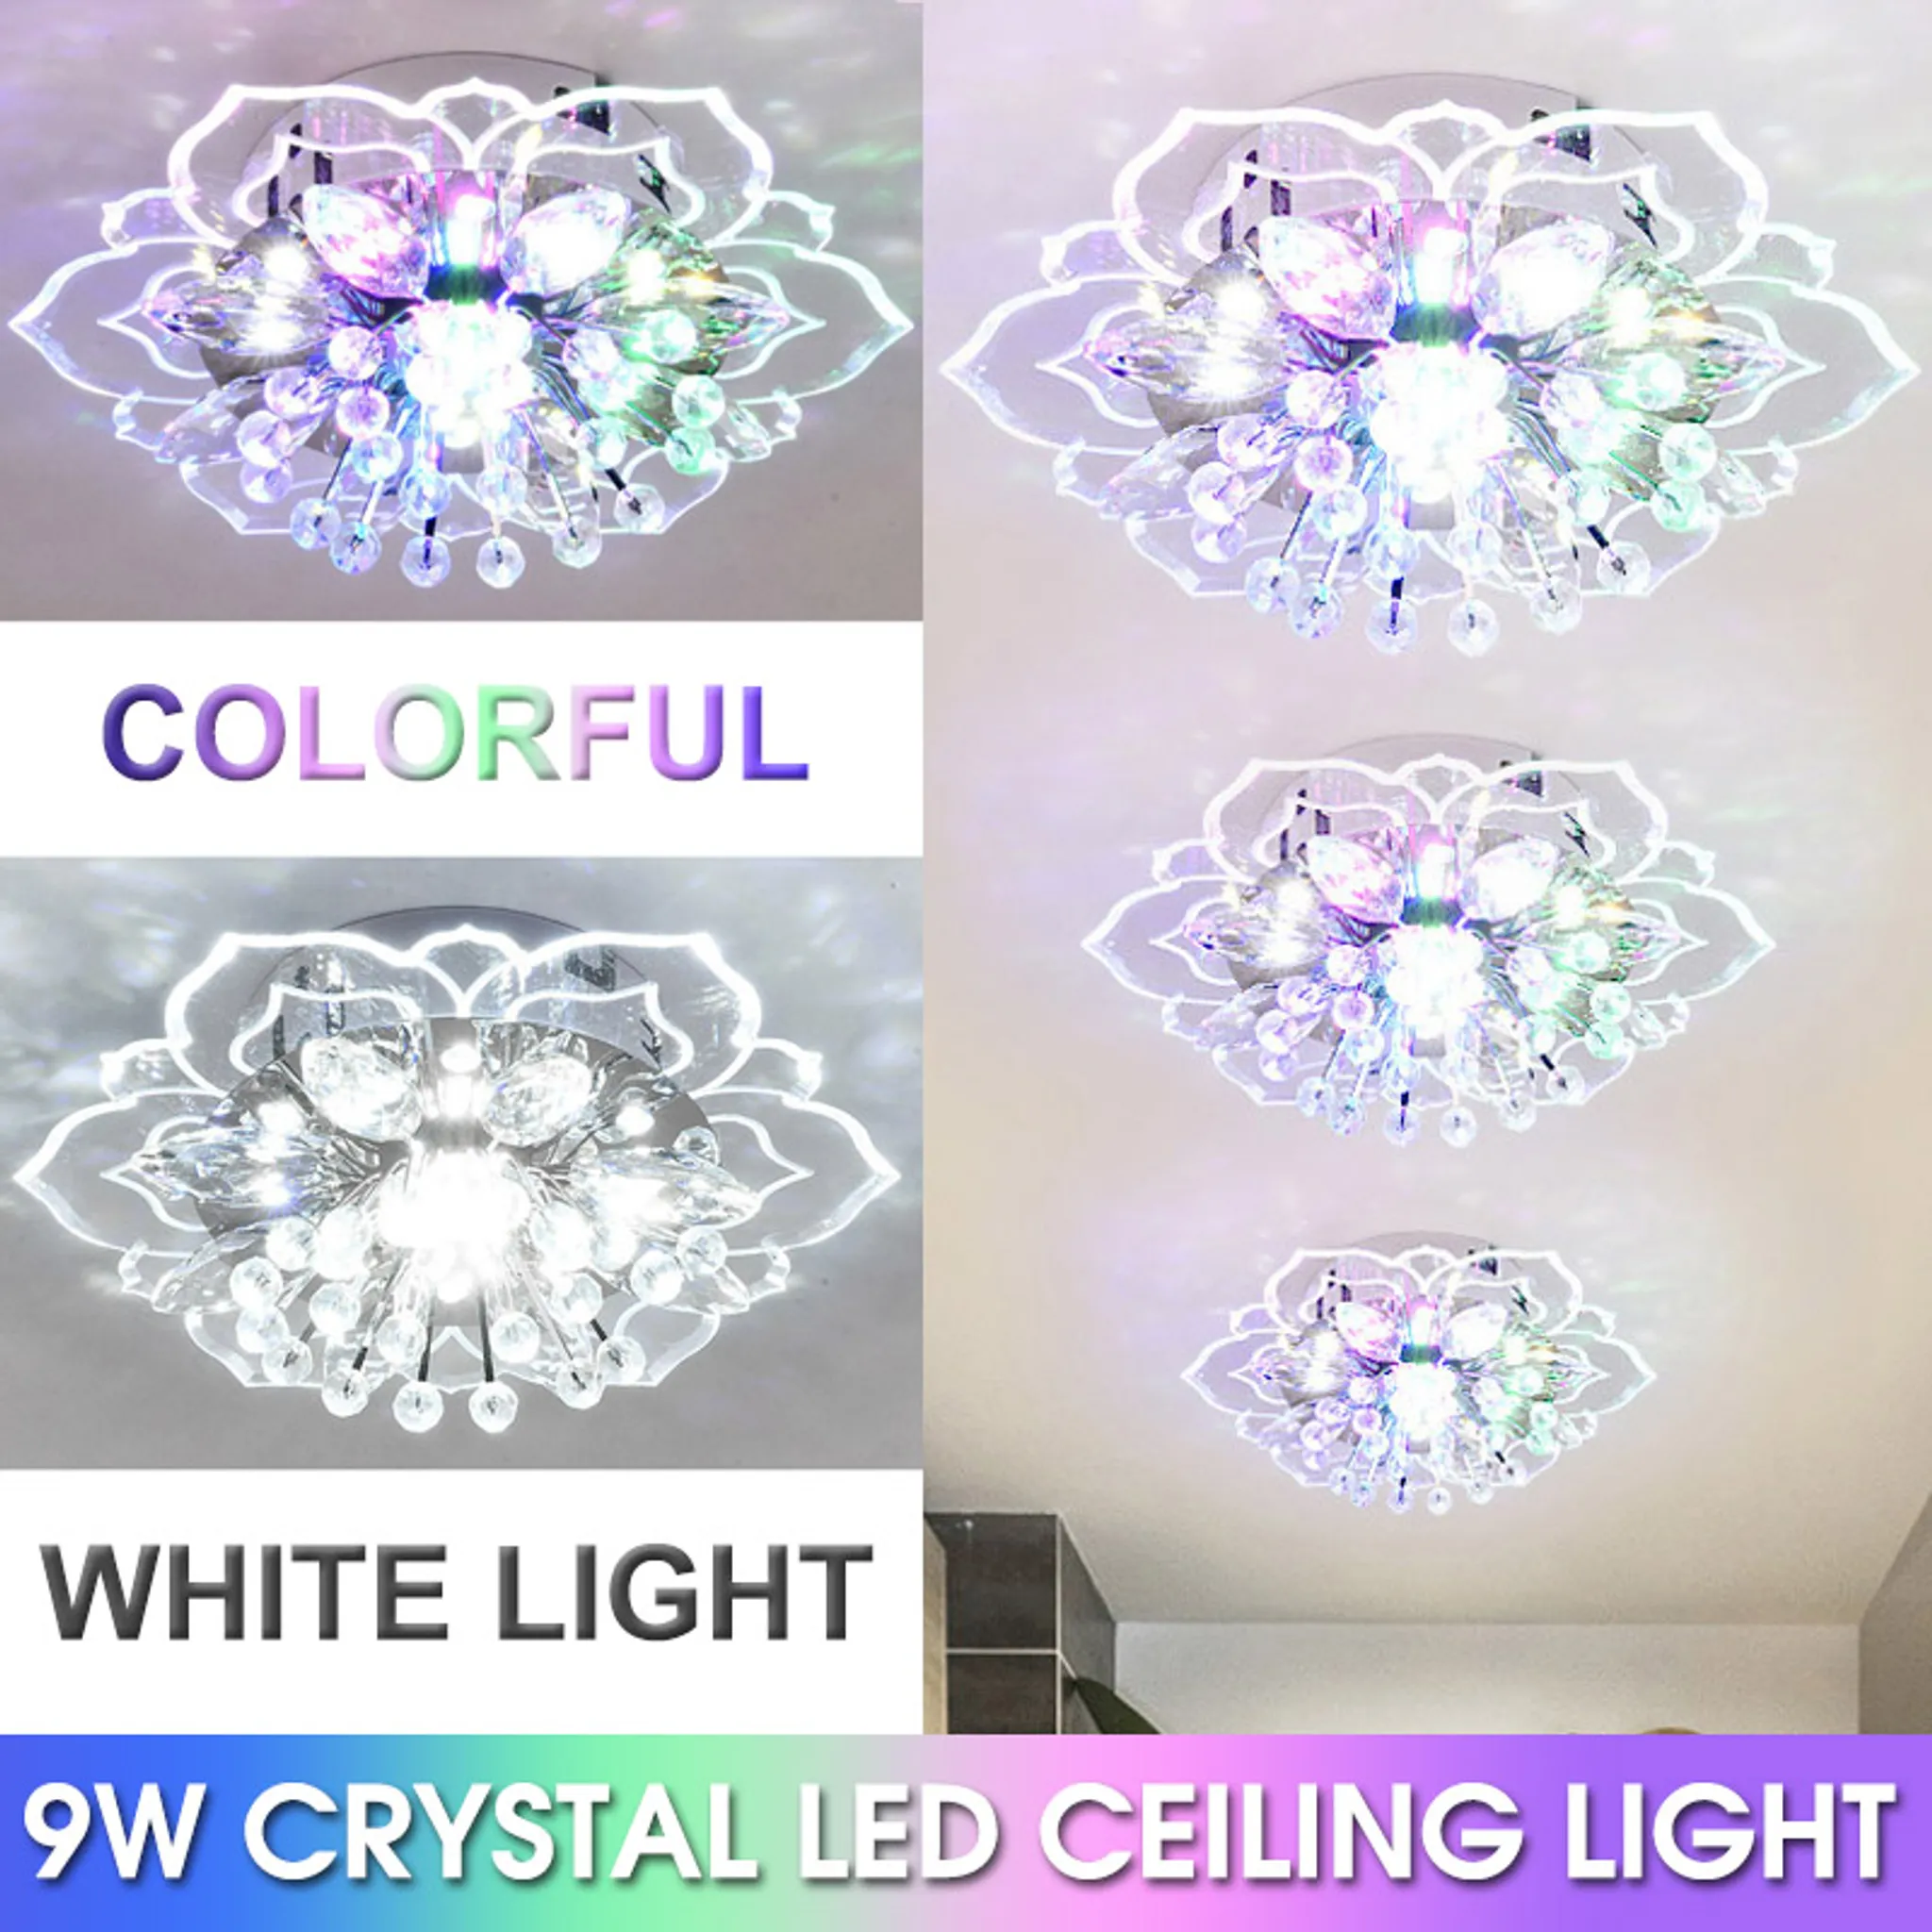 Kristall Round-72W Dimmbar LED Deckenlampe Kristall 72W Dimmbar Sternenlicht Deckenleuchte Lampe Kreative Energiesparlampe für Flur Wohnzimmer Schlafzimmer Küche Büro 